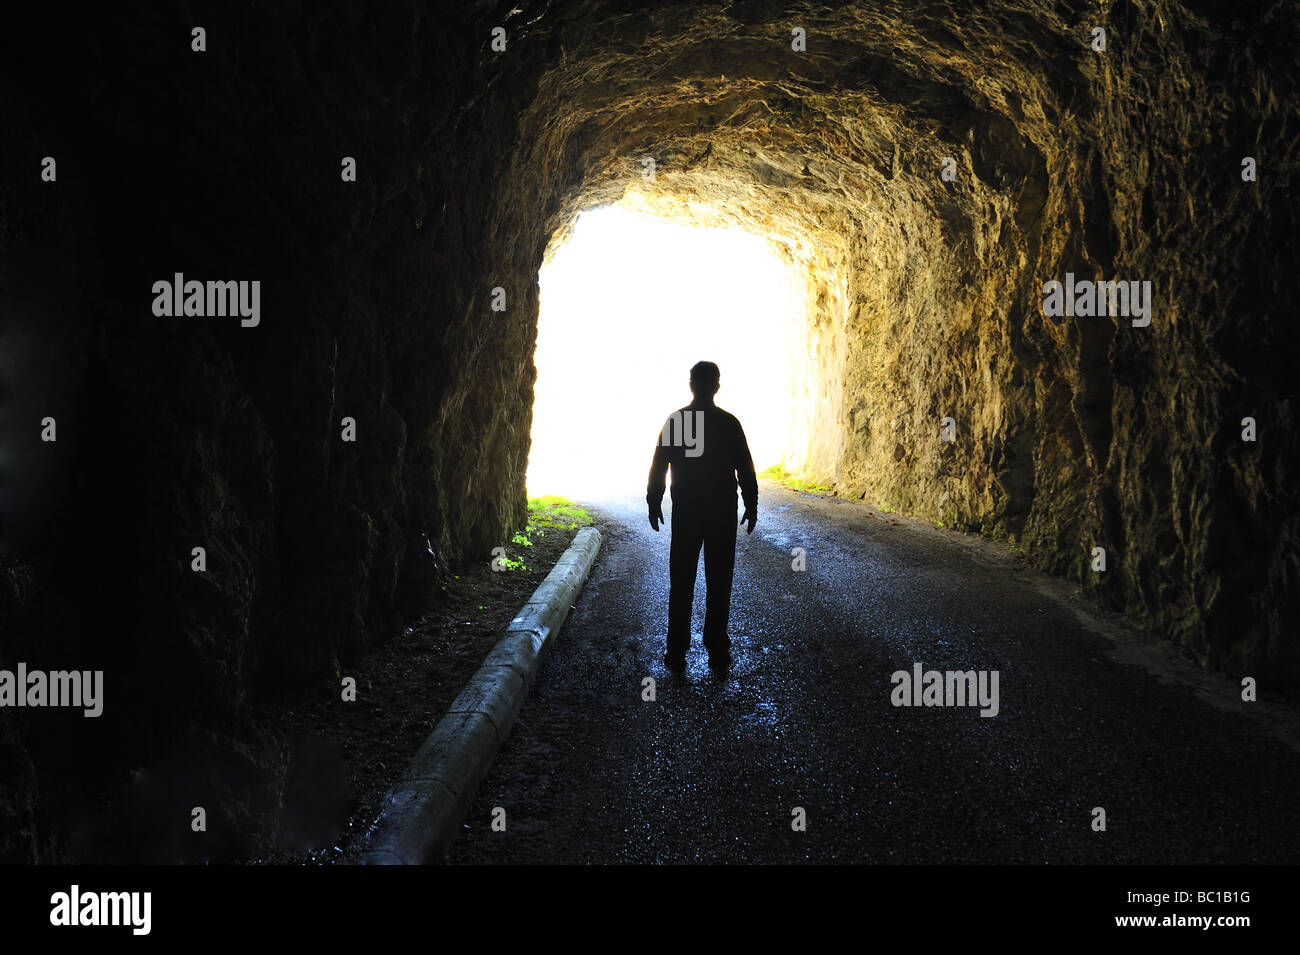 Licht am Ende des Tunnels. Silhouette einer Figur stehen am Ende eines dunklen Tunnels Blick auf hellem Tageslicht. Stockfoto